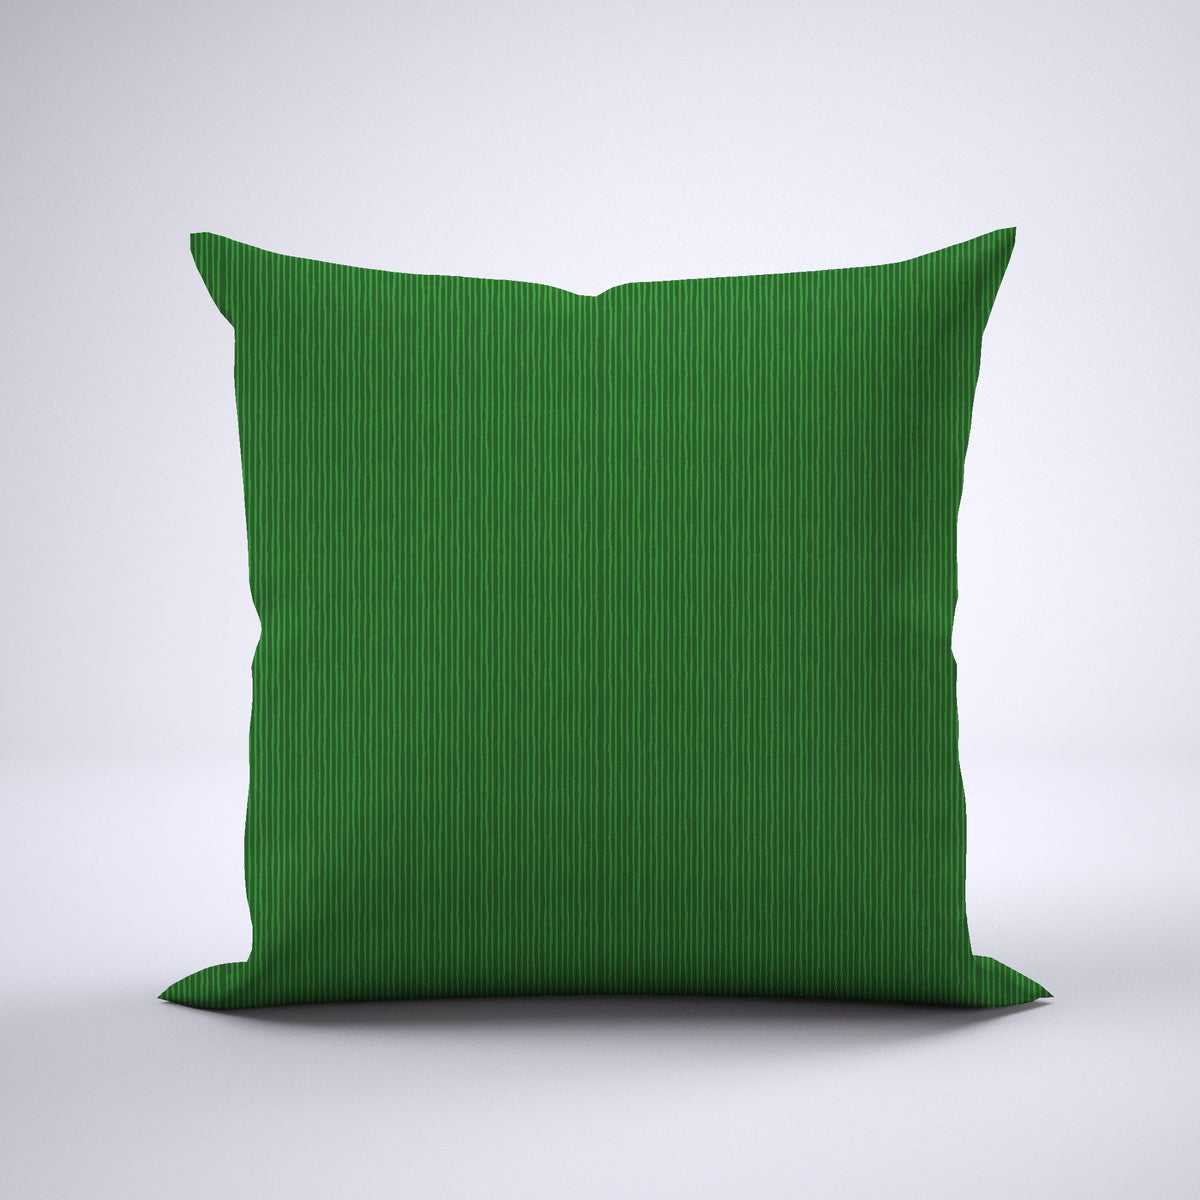 Throw Pillow - Narrow Stripes Green MWW 